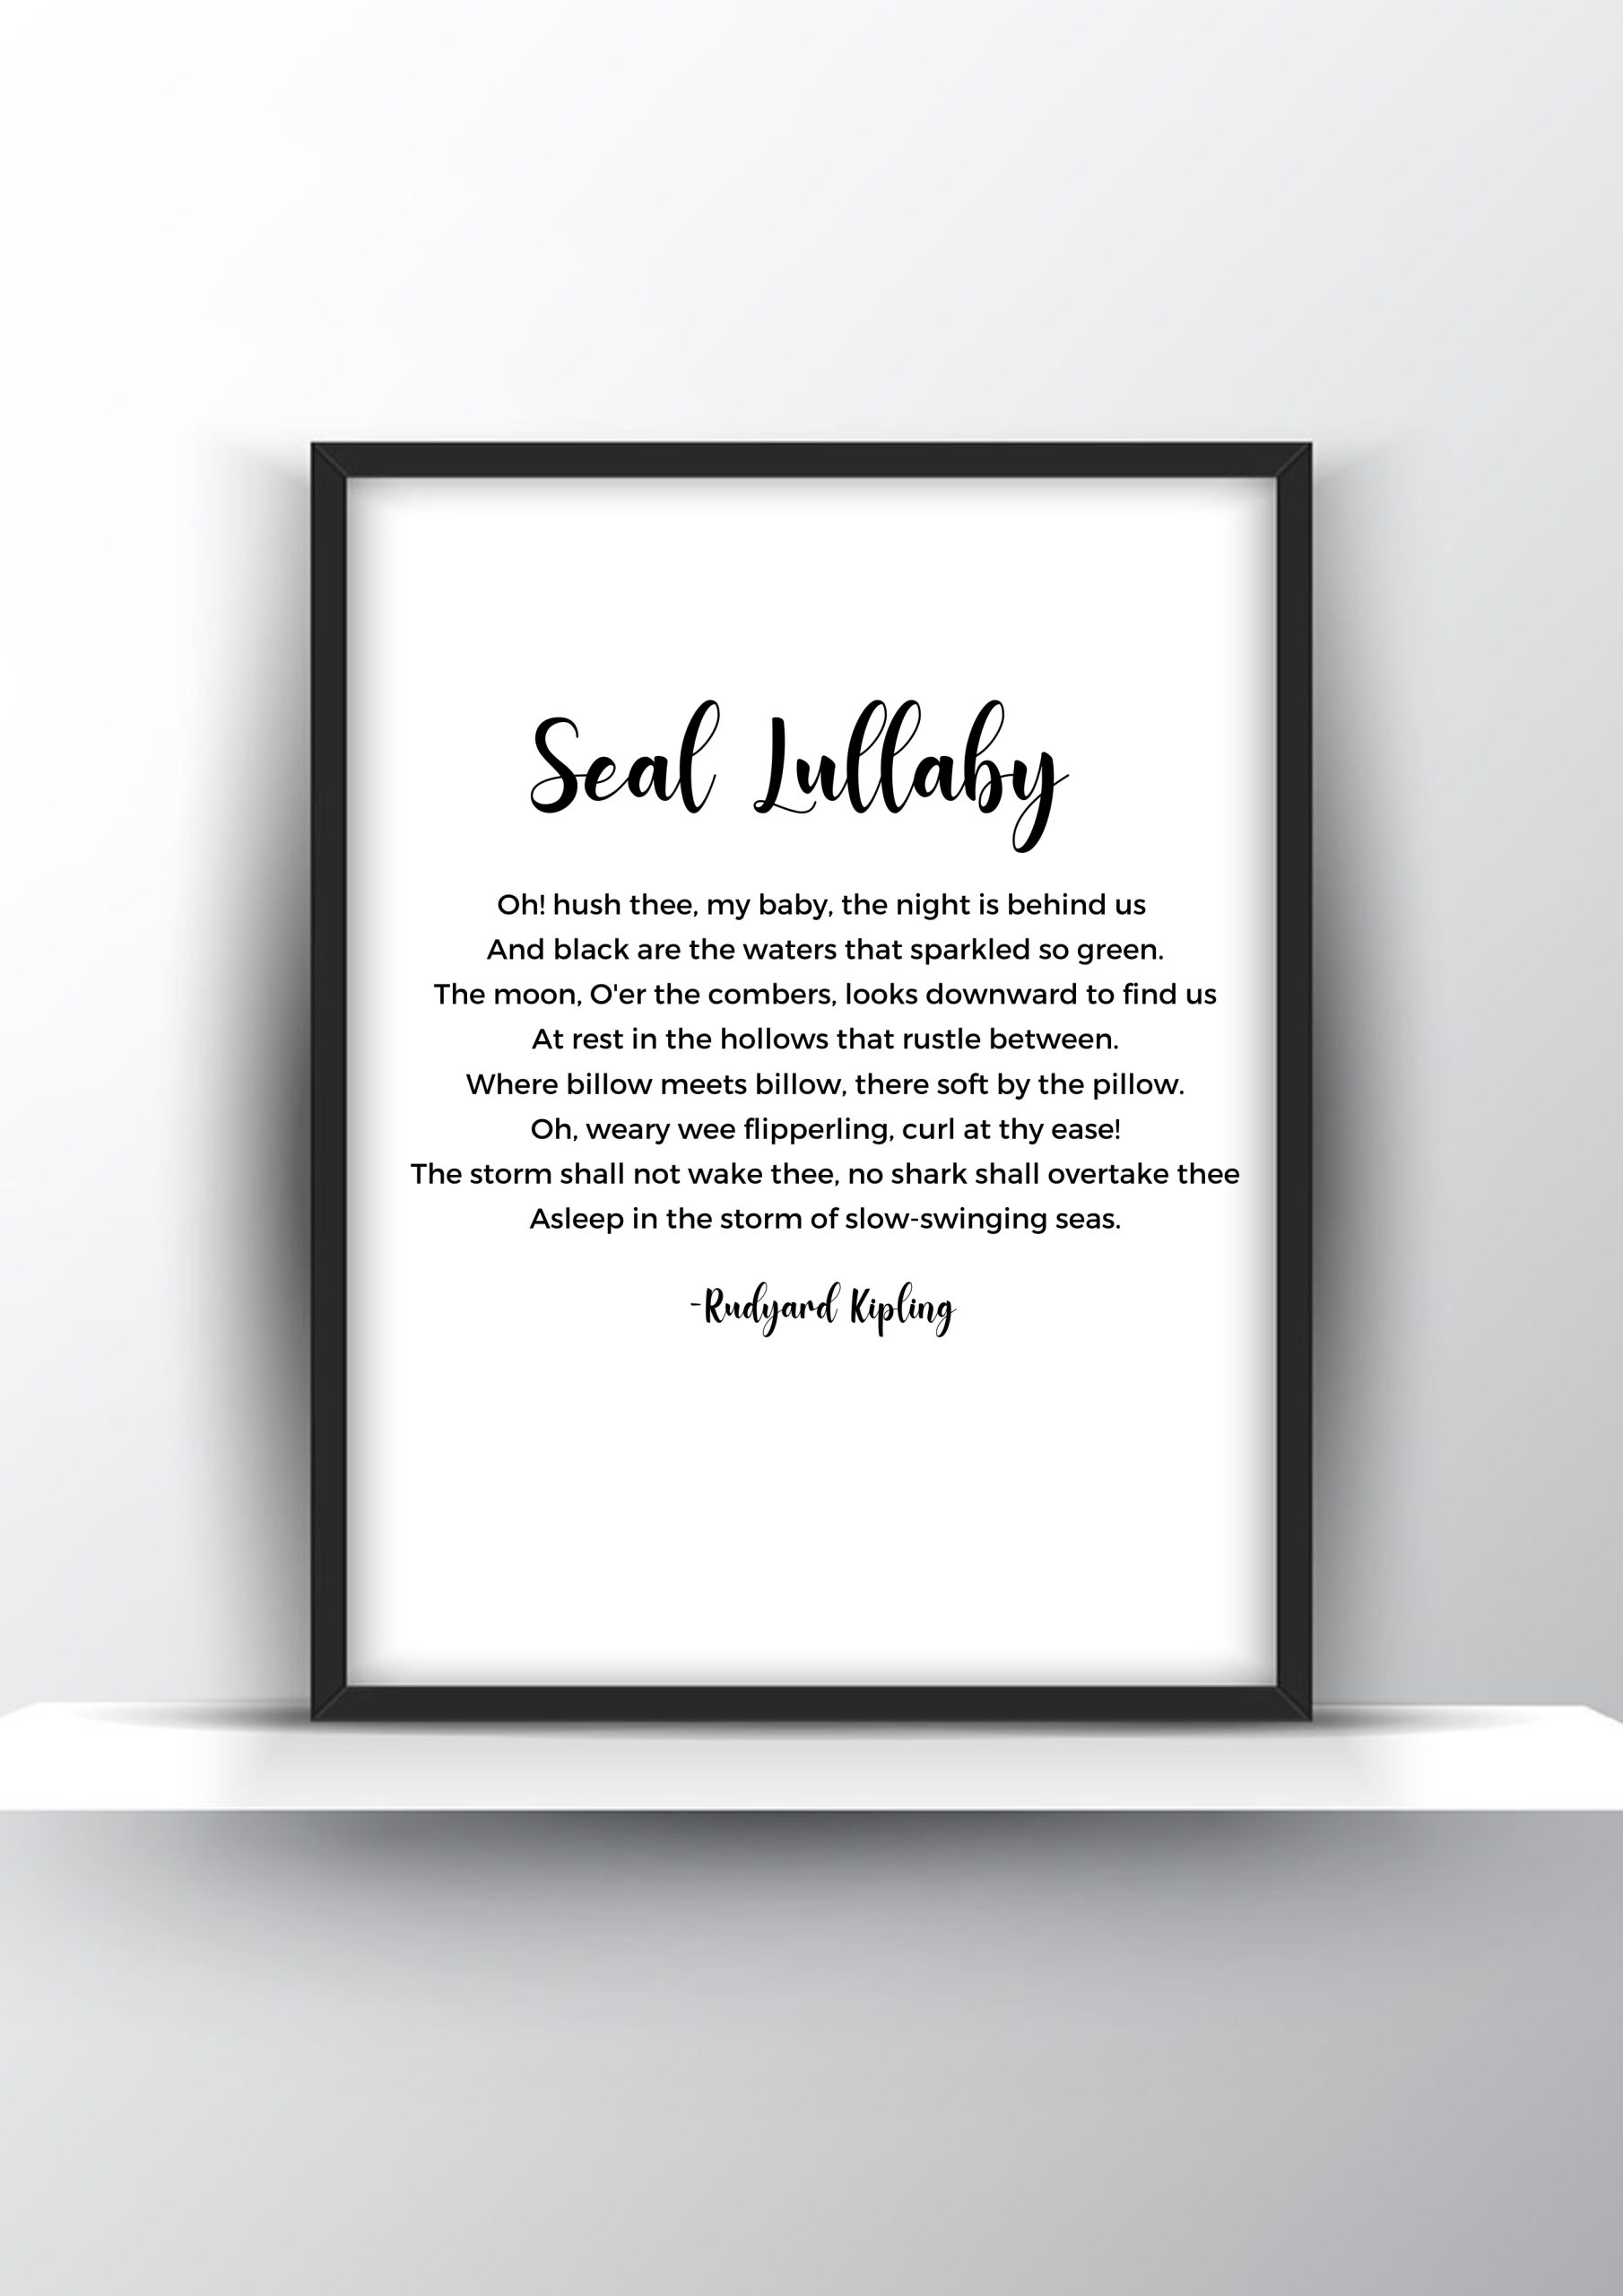 Seal Lullaby Poem by Rudyard Kipling